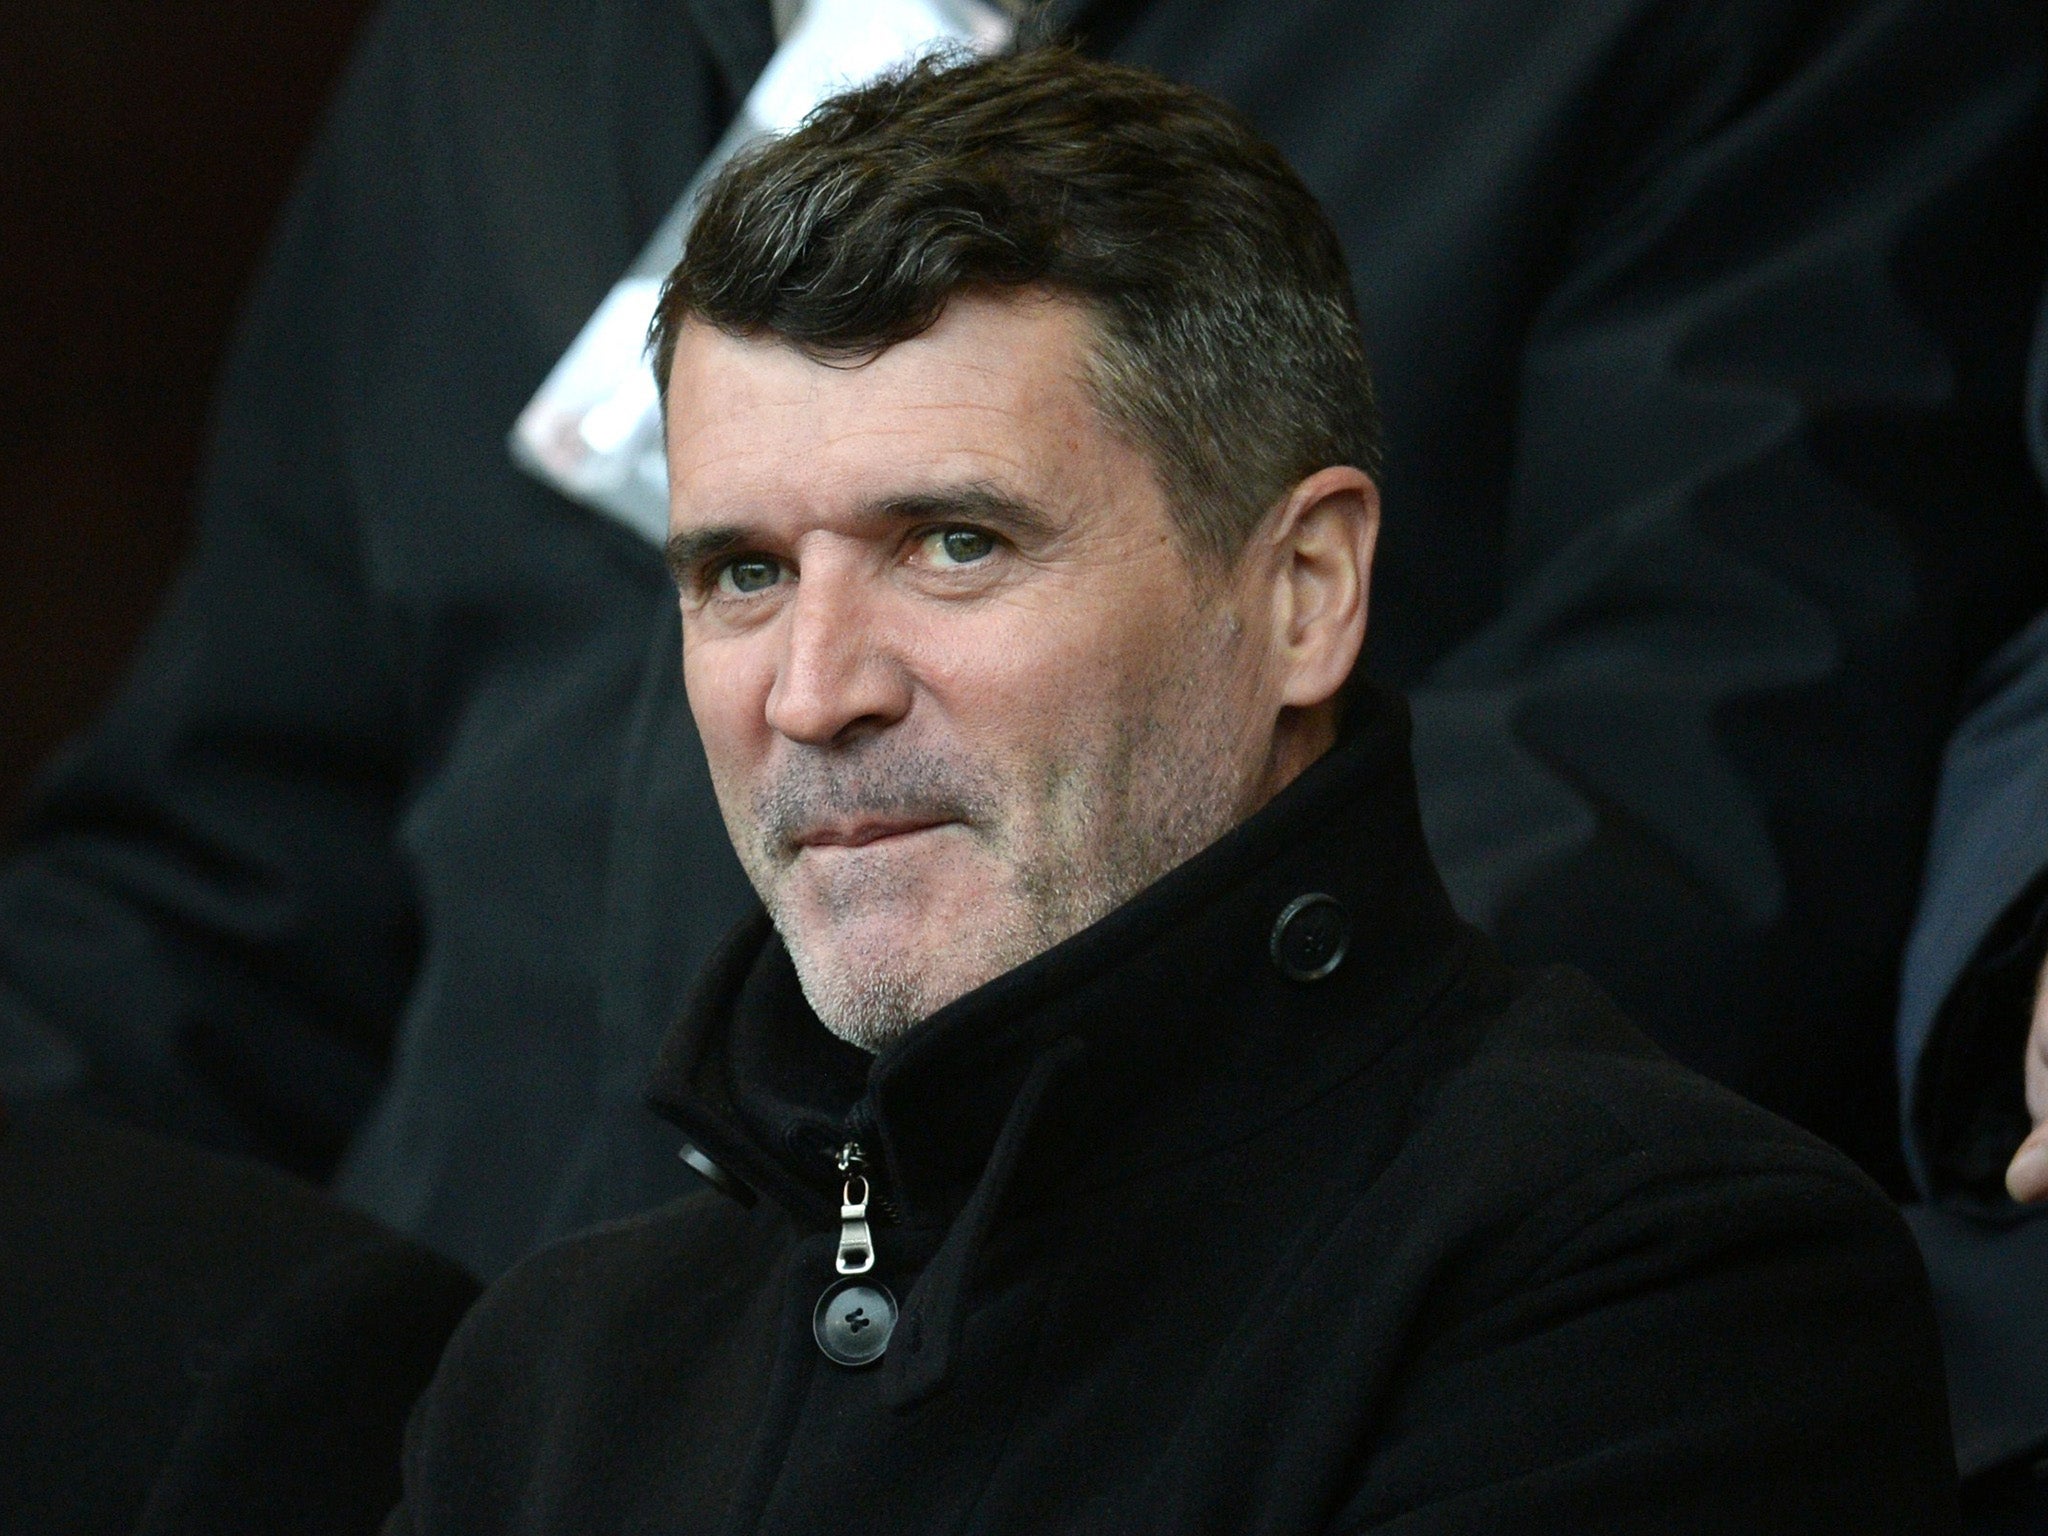 Former Manchester United midfielder Roy Keane